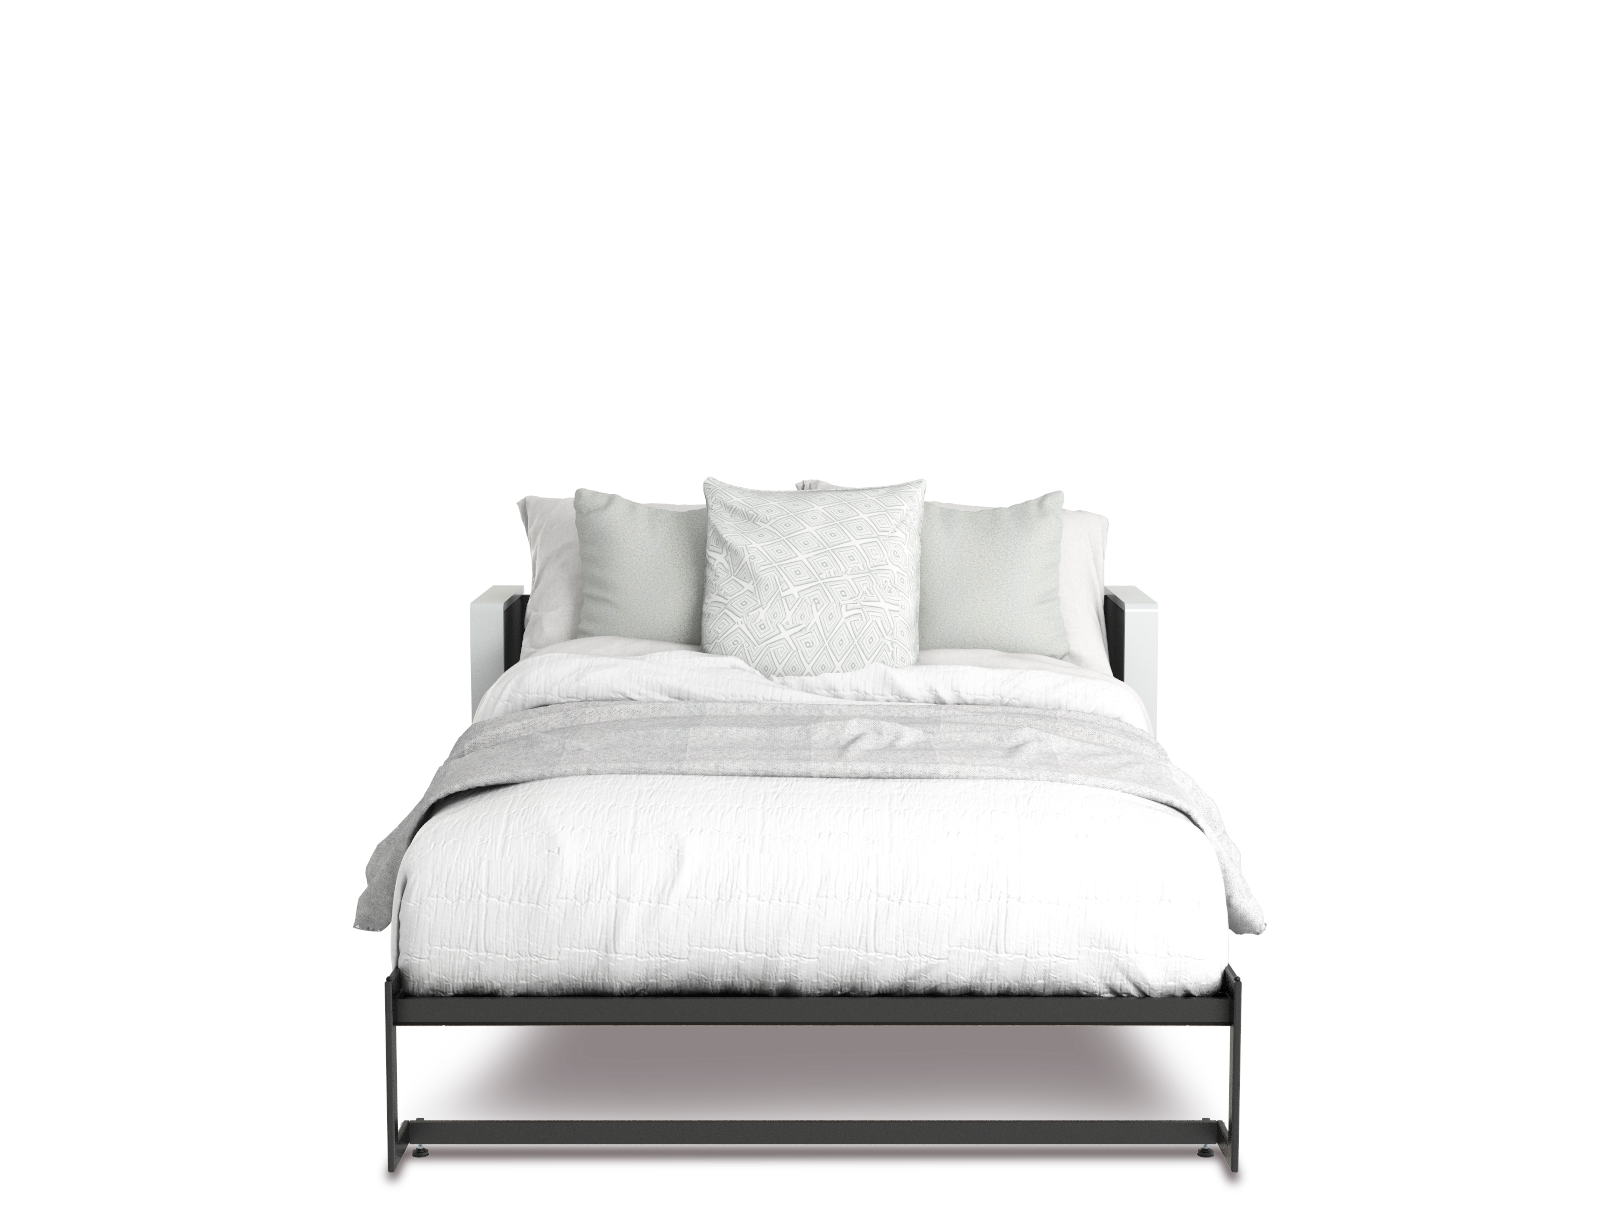 Esentelle base de cama queen size con laminado de madera color concreto // MS